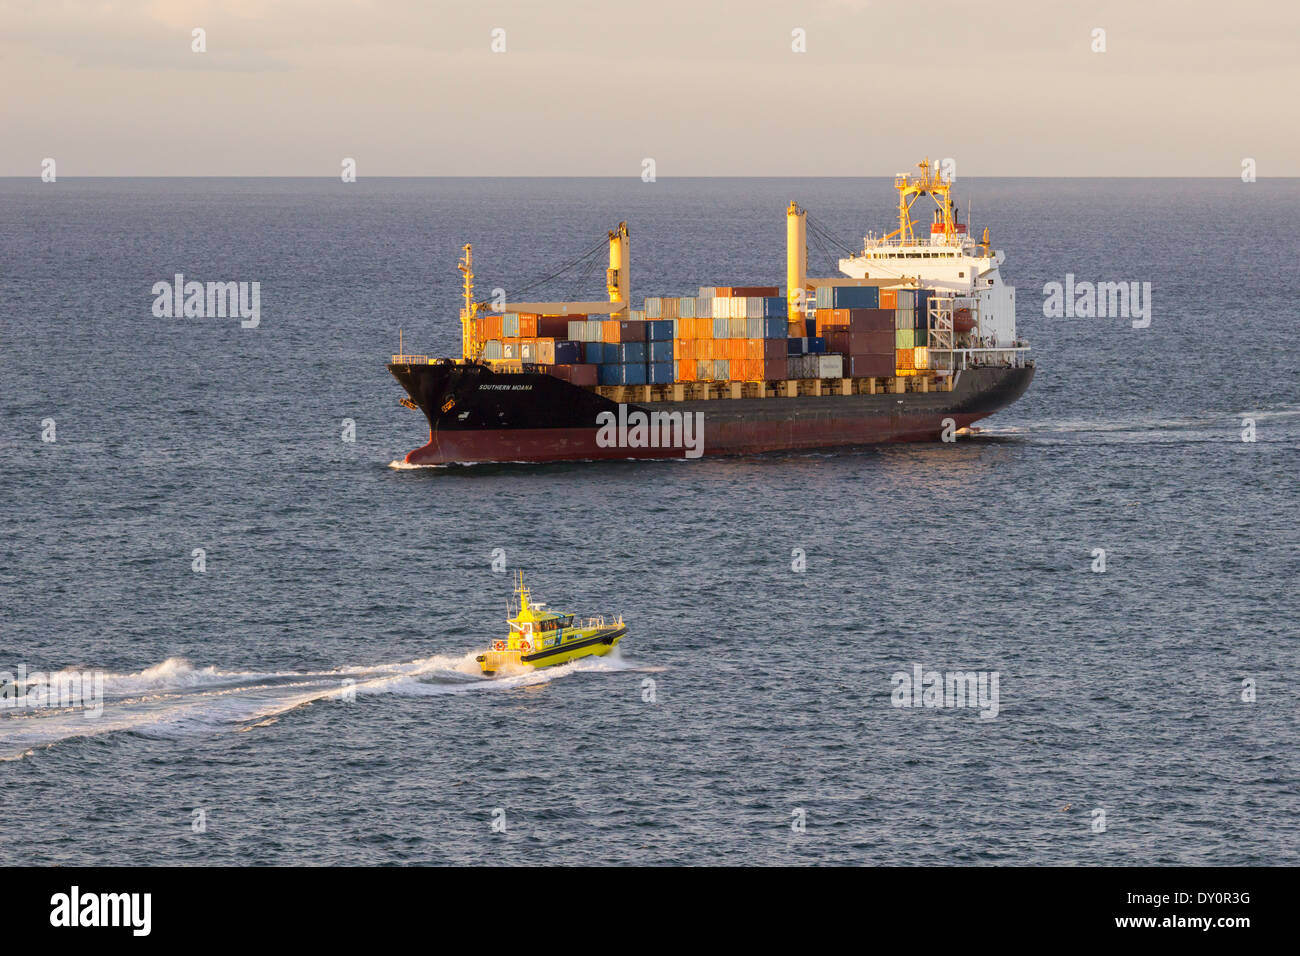 Conteneurs de fret avec bateau-pilote jaune approchant au crépuscule Banque D'Images